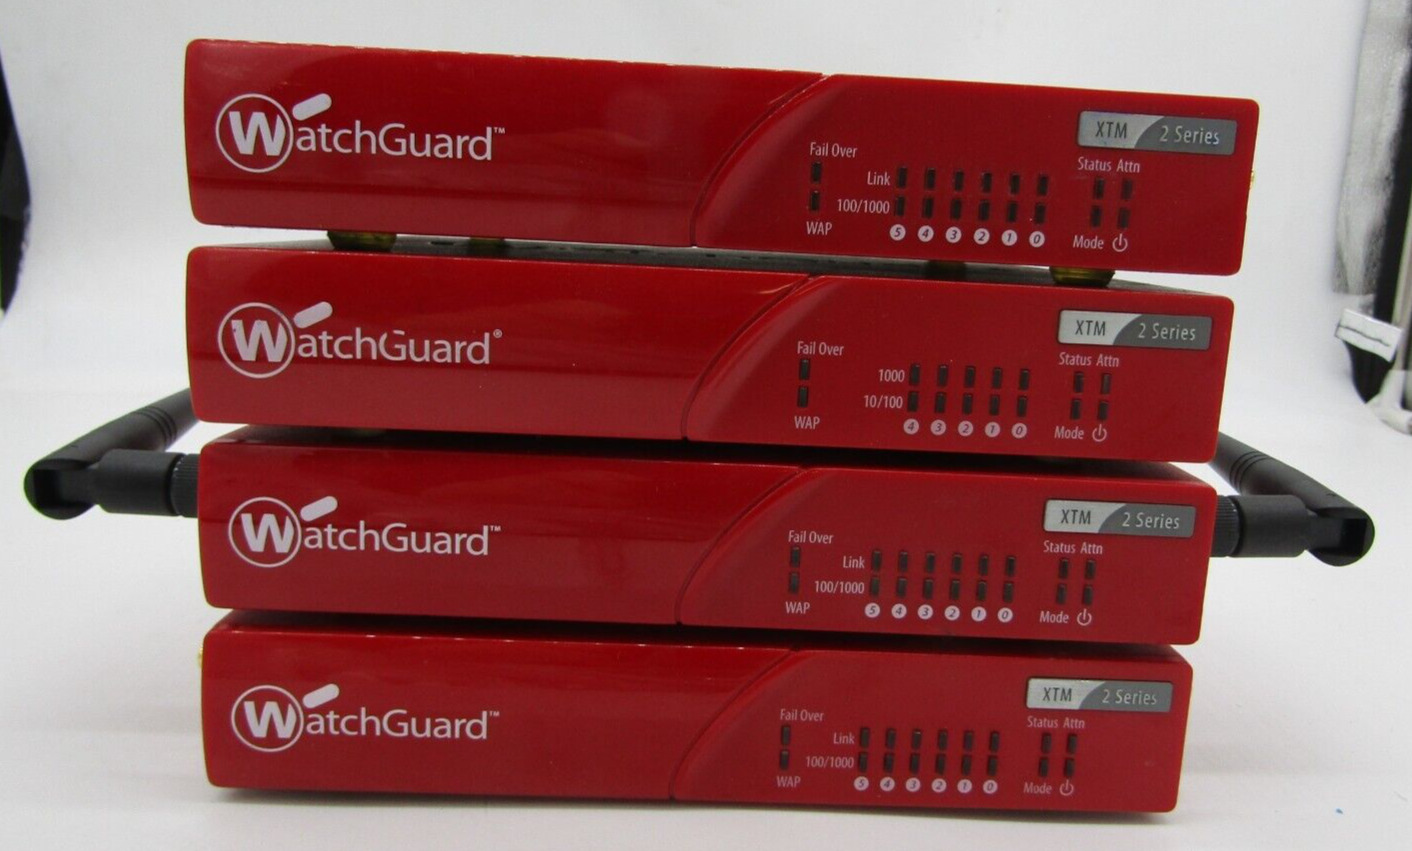 * LOT OF 4* WatchGuard XTM2 Series (FS1E5) Firebox Firewall Router